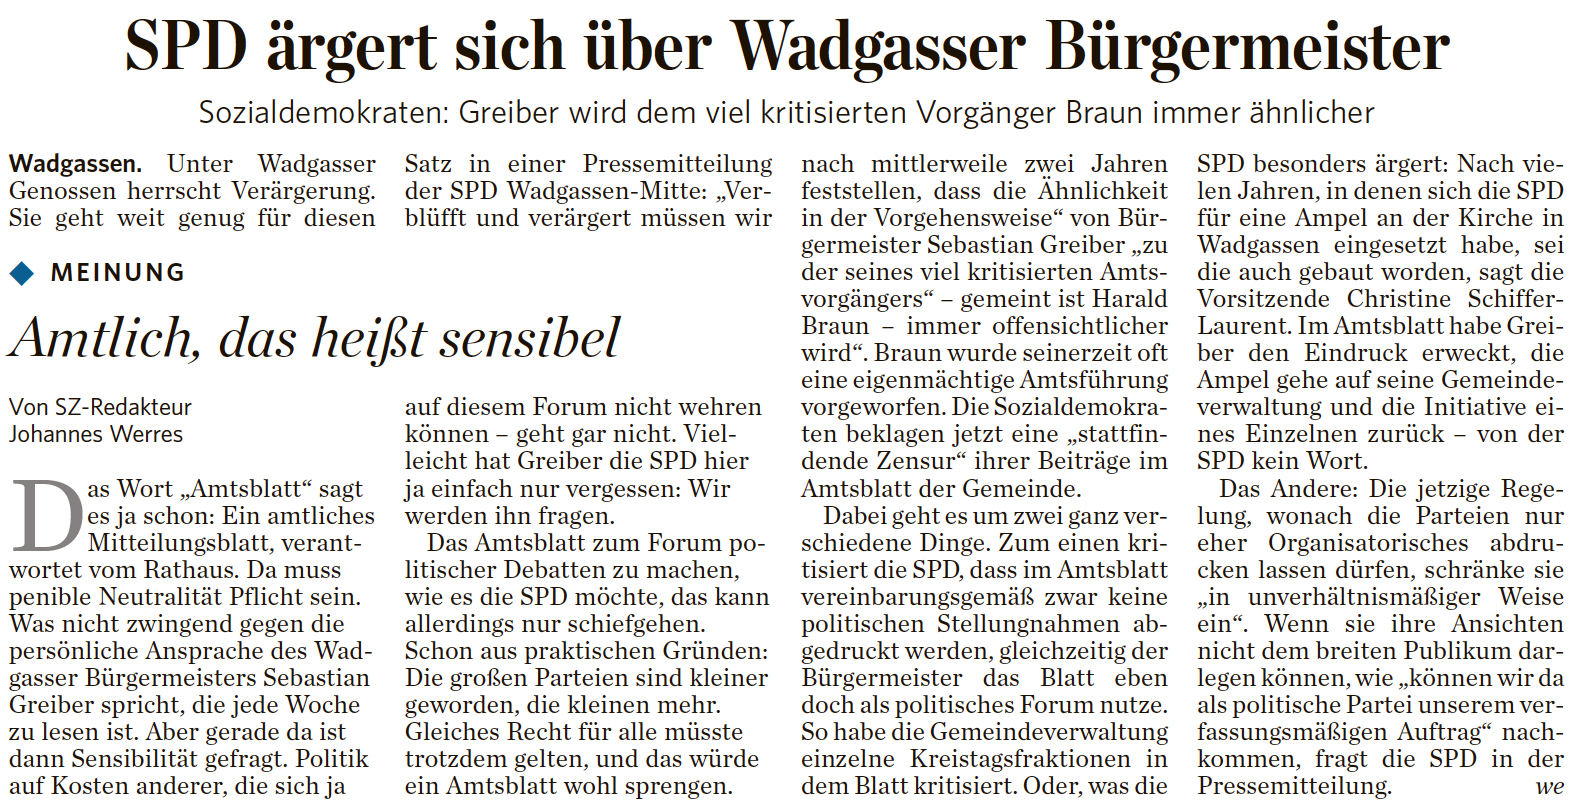 Zum Verwechseln ähnlich? SPD Wadgassen vergleicht Bürgermeister Greiber mit ehemaligen SPD-Bürgermeister